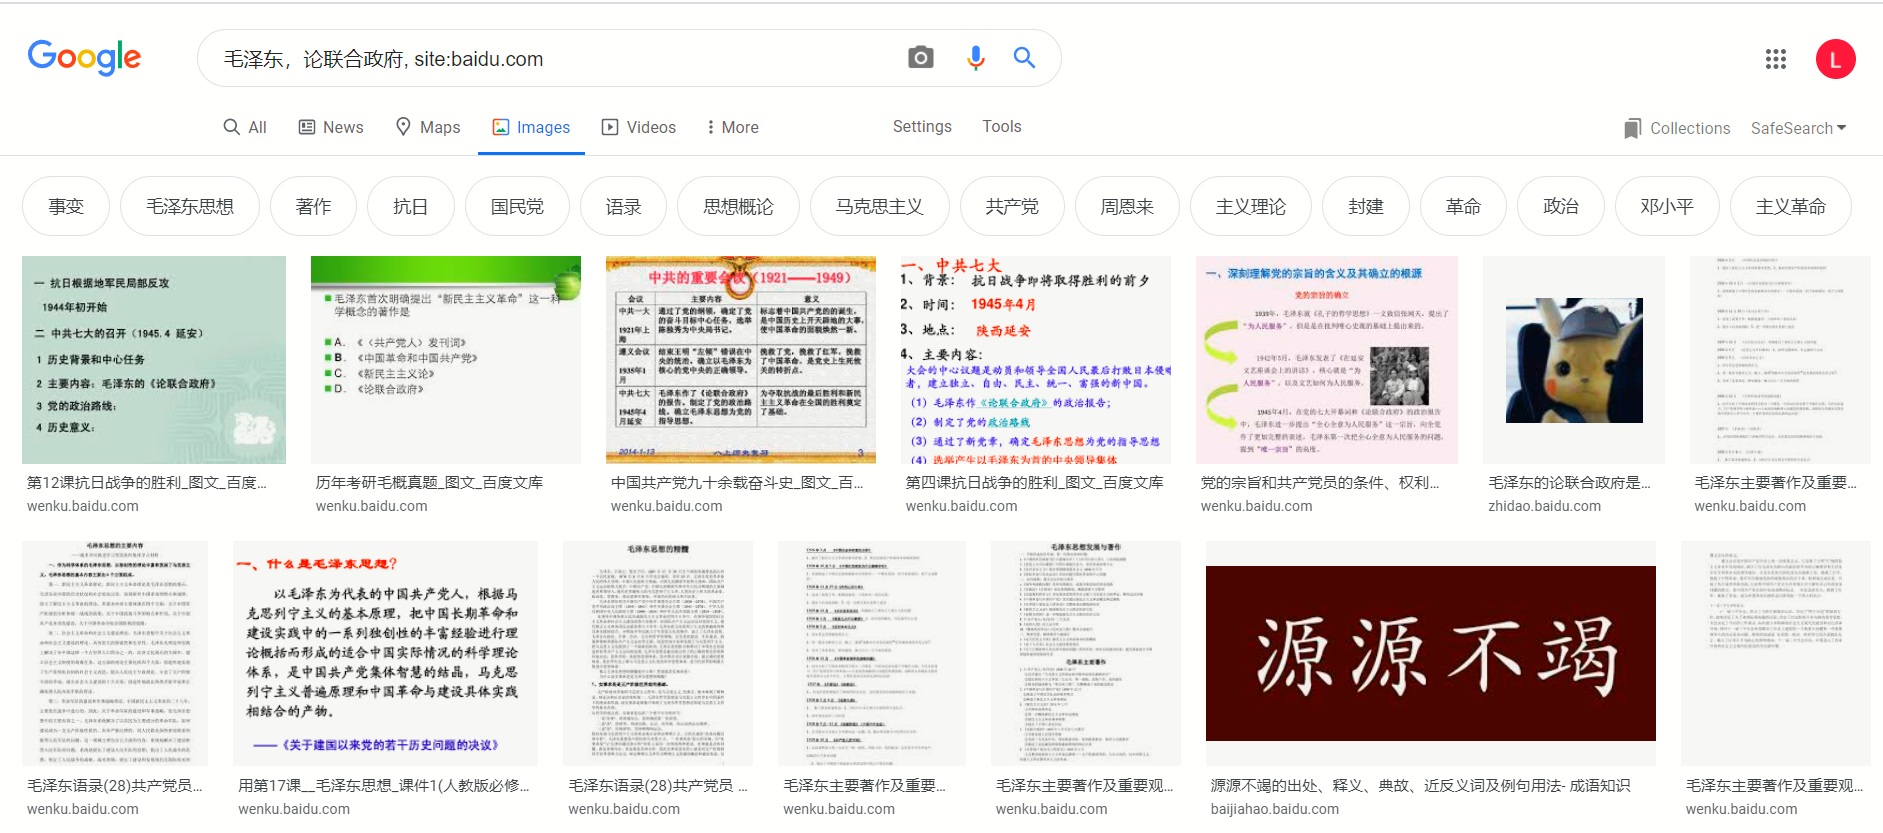 google-baidu-com.jpg